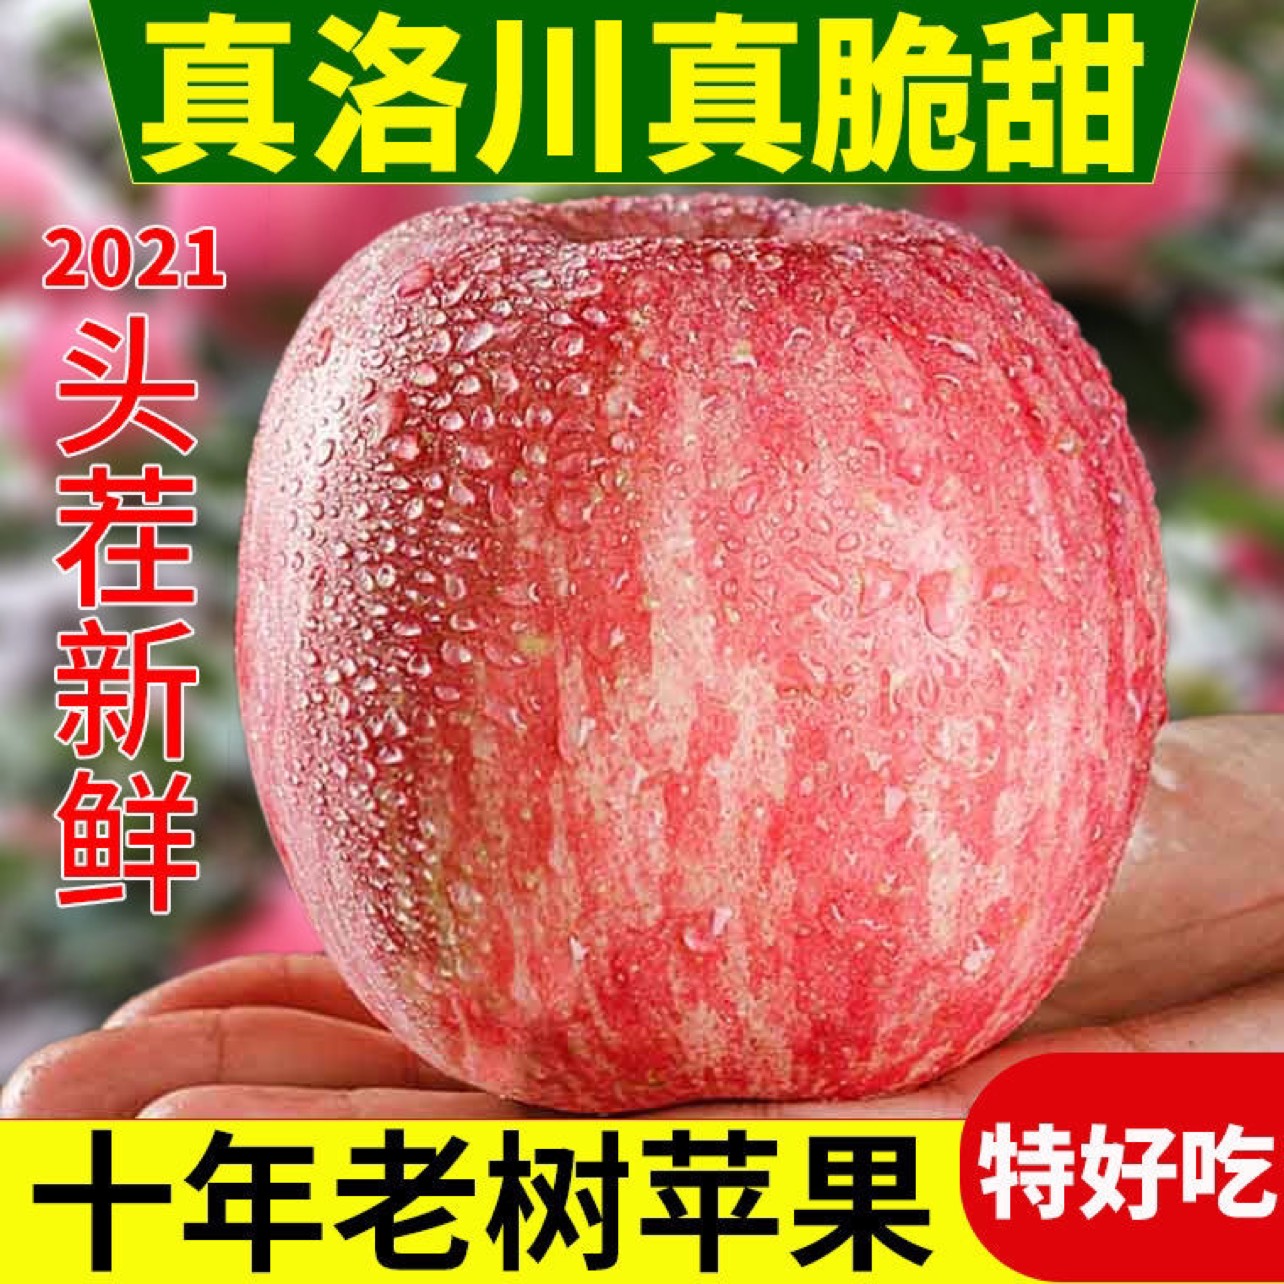 洛川县【洛川苹果】陕西洛川红富士冰糖心苹果新鲜脆甜水果包邮